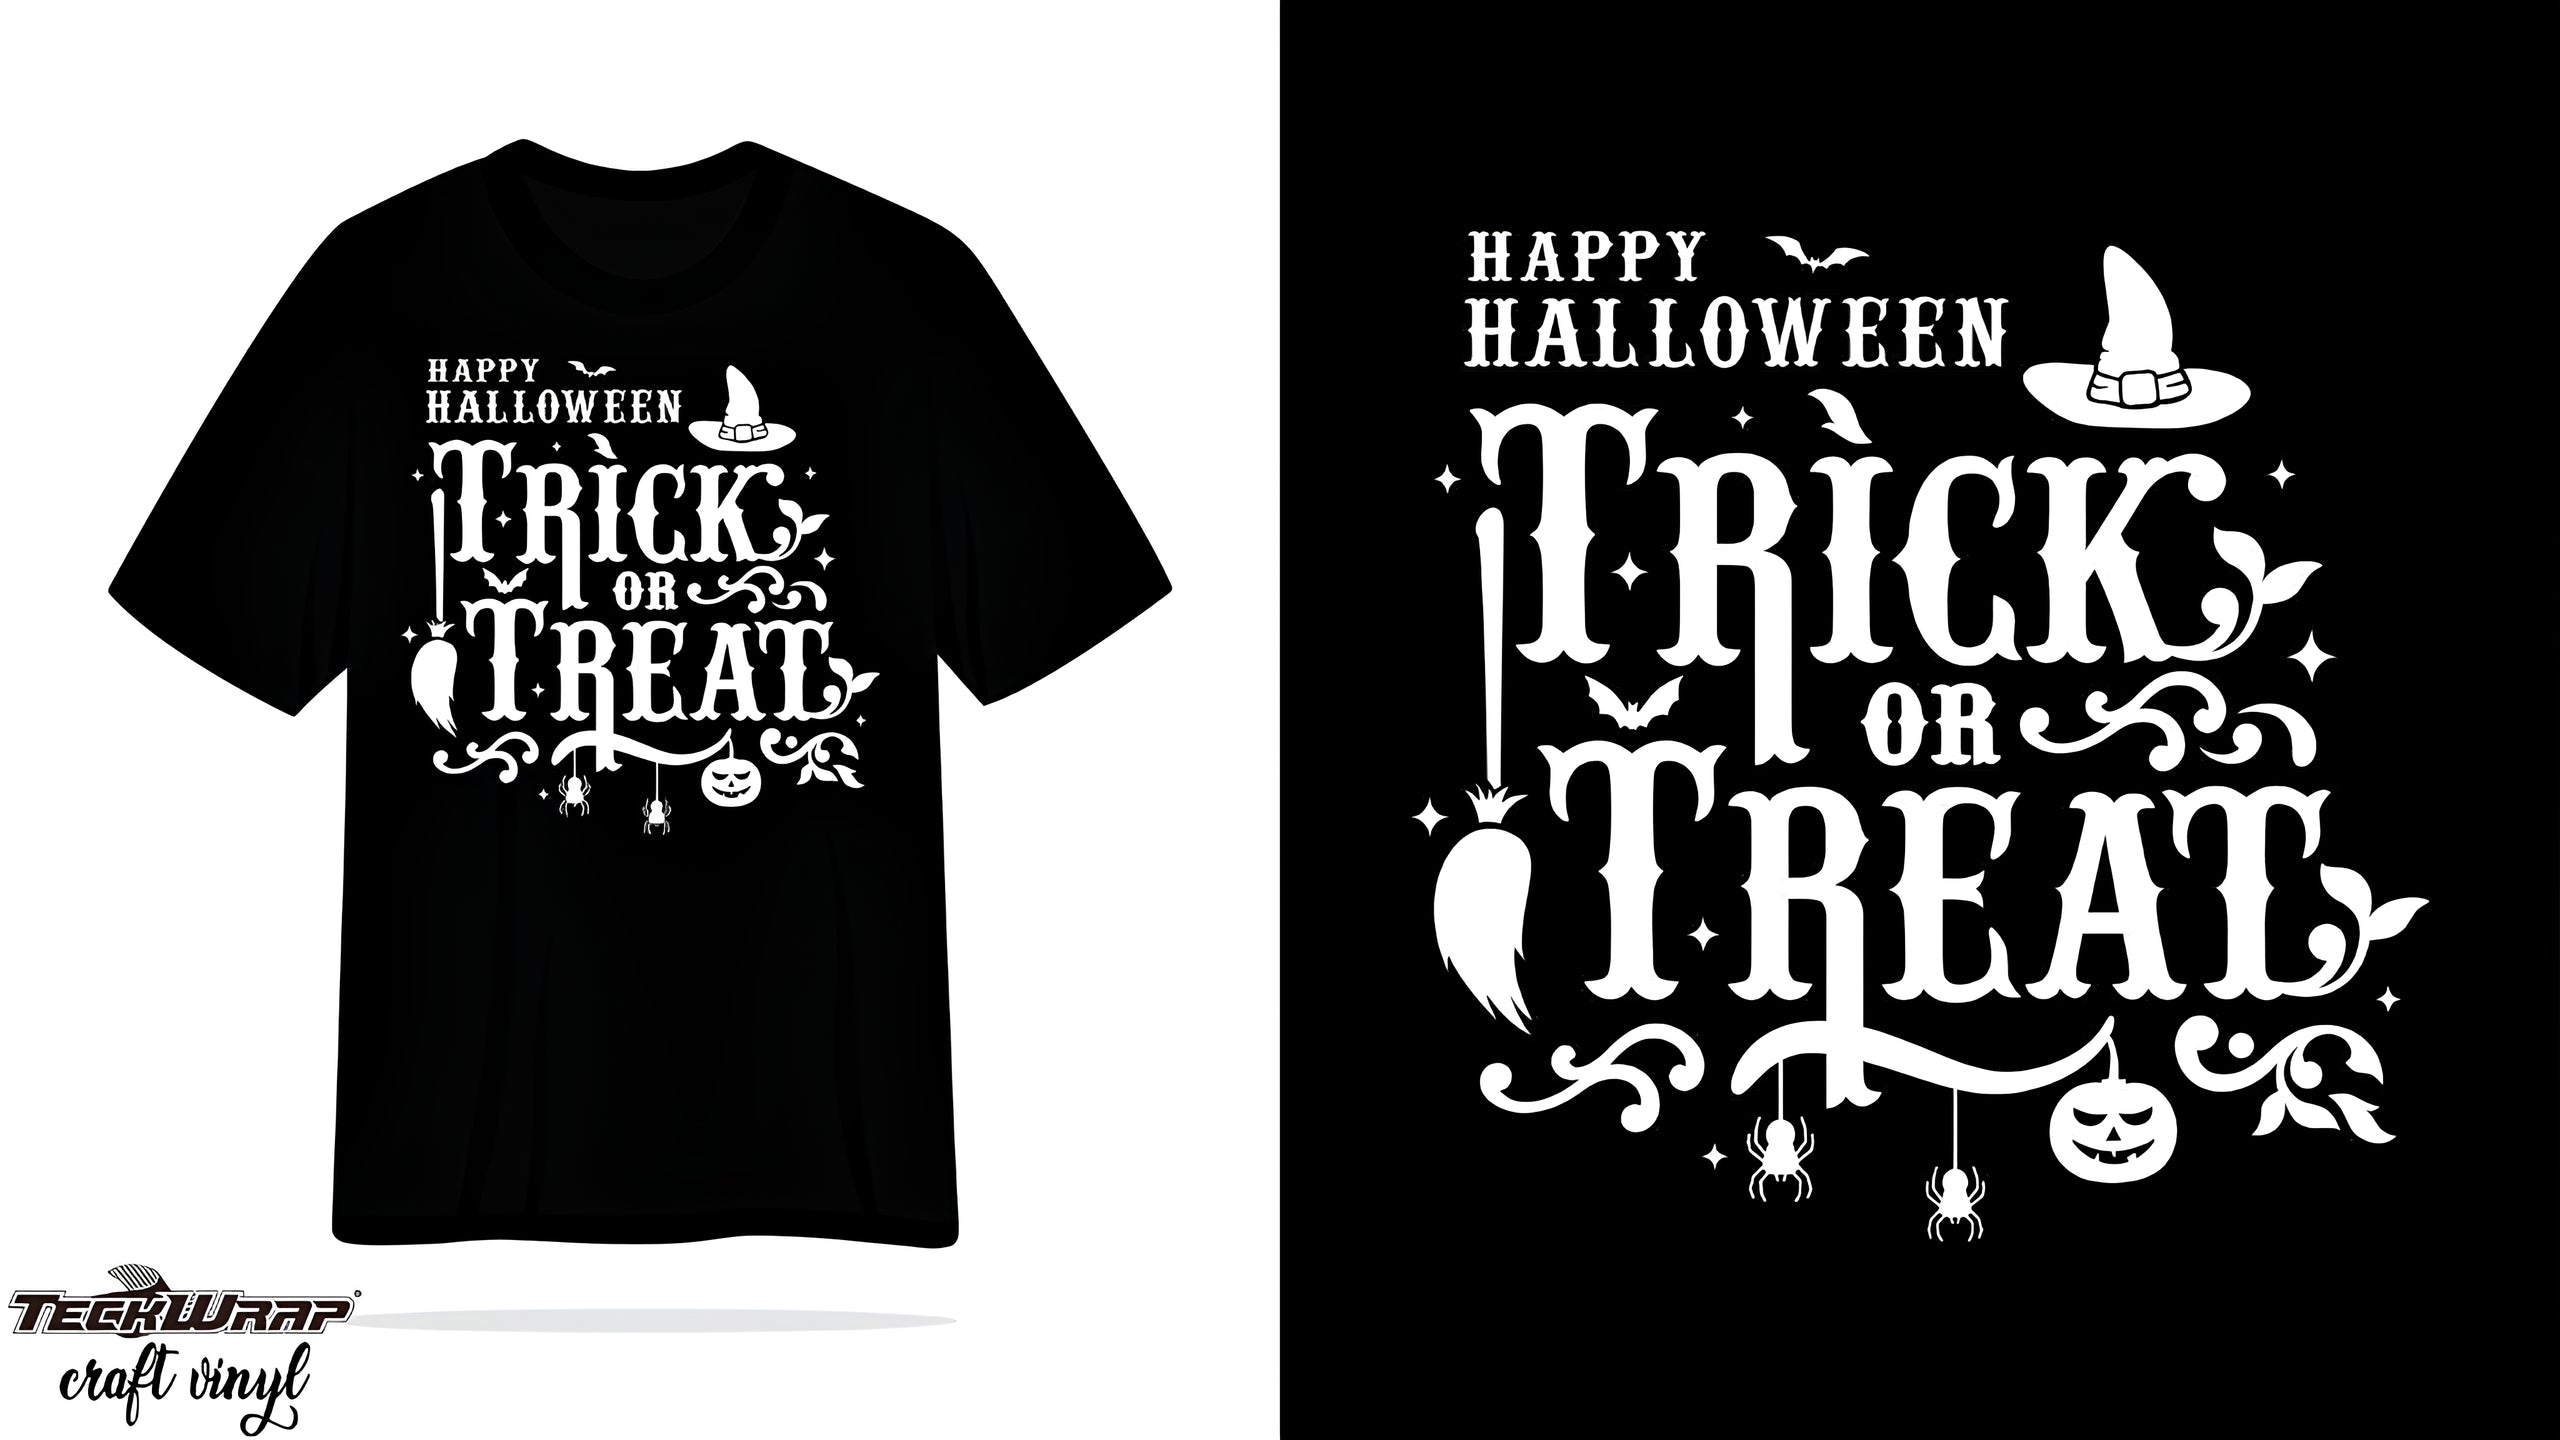 Fonts Matter When Using Halloween Shirt Ideas